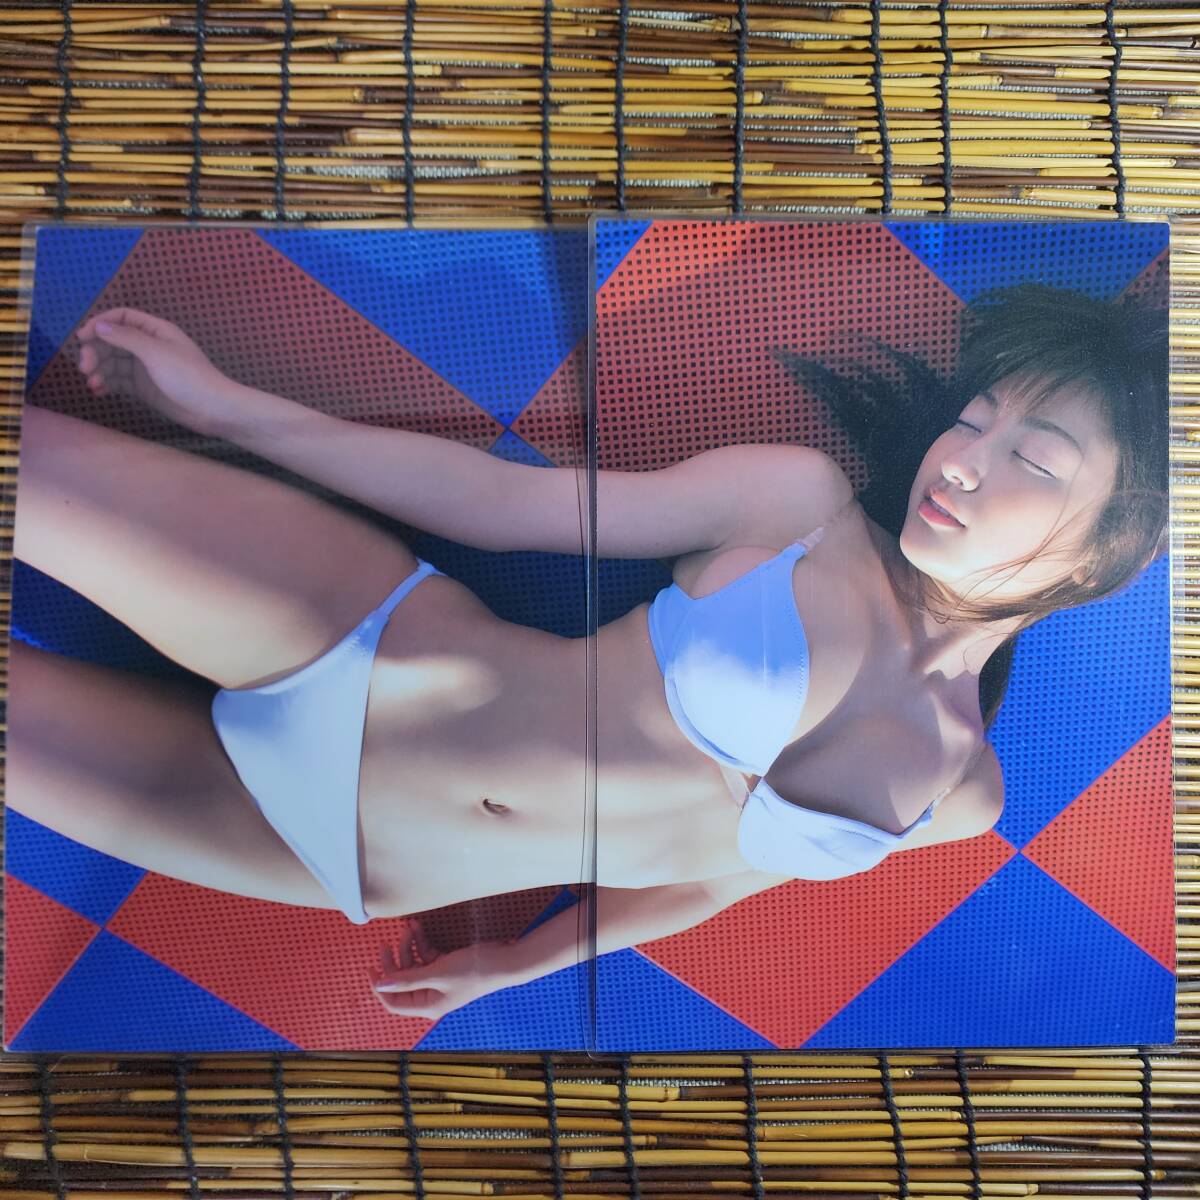 [ высокое качество толстый 150μ ламинирование обработка ] Kumada Youko yamagaBIKiNIES2004.1.27 купальный костюм A4 журнал вырезки 4 страница [ bikini model ]